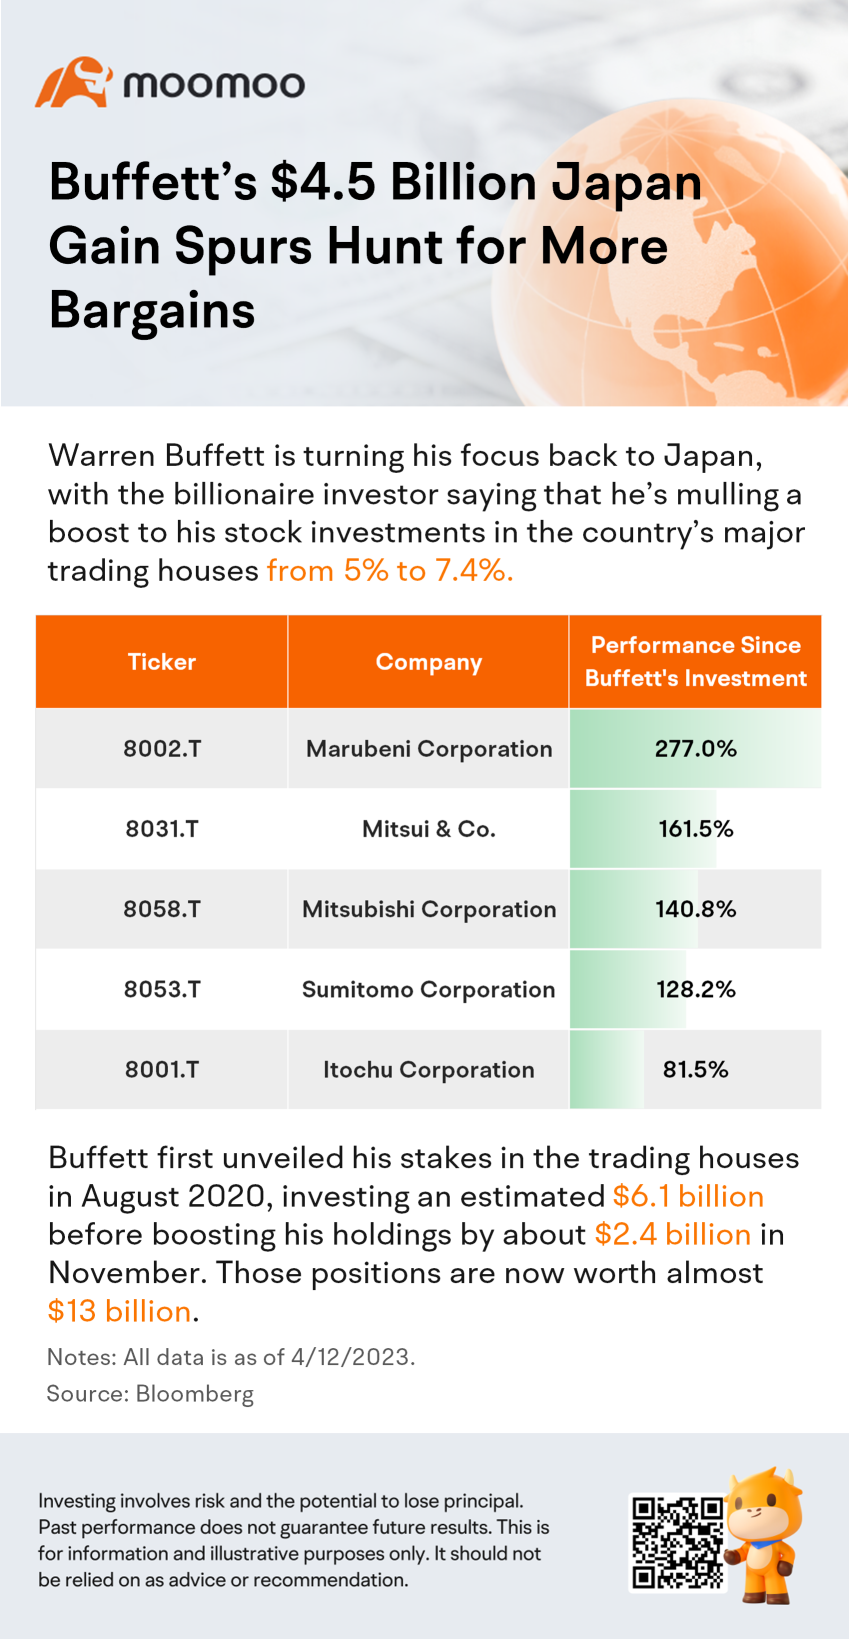 巴菲特在日本获得的45亿美元收益促使人们寻找更多便宜货